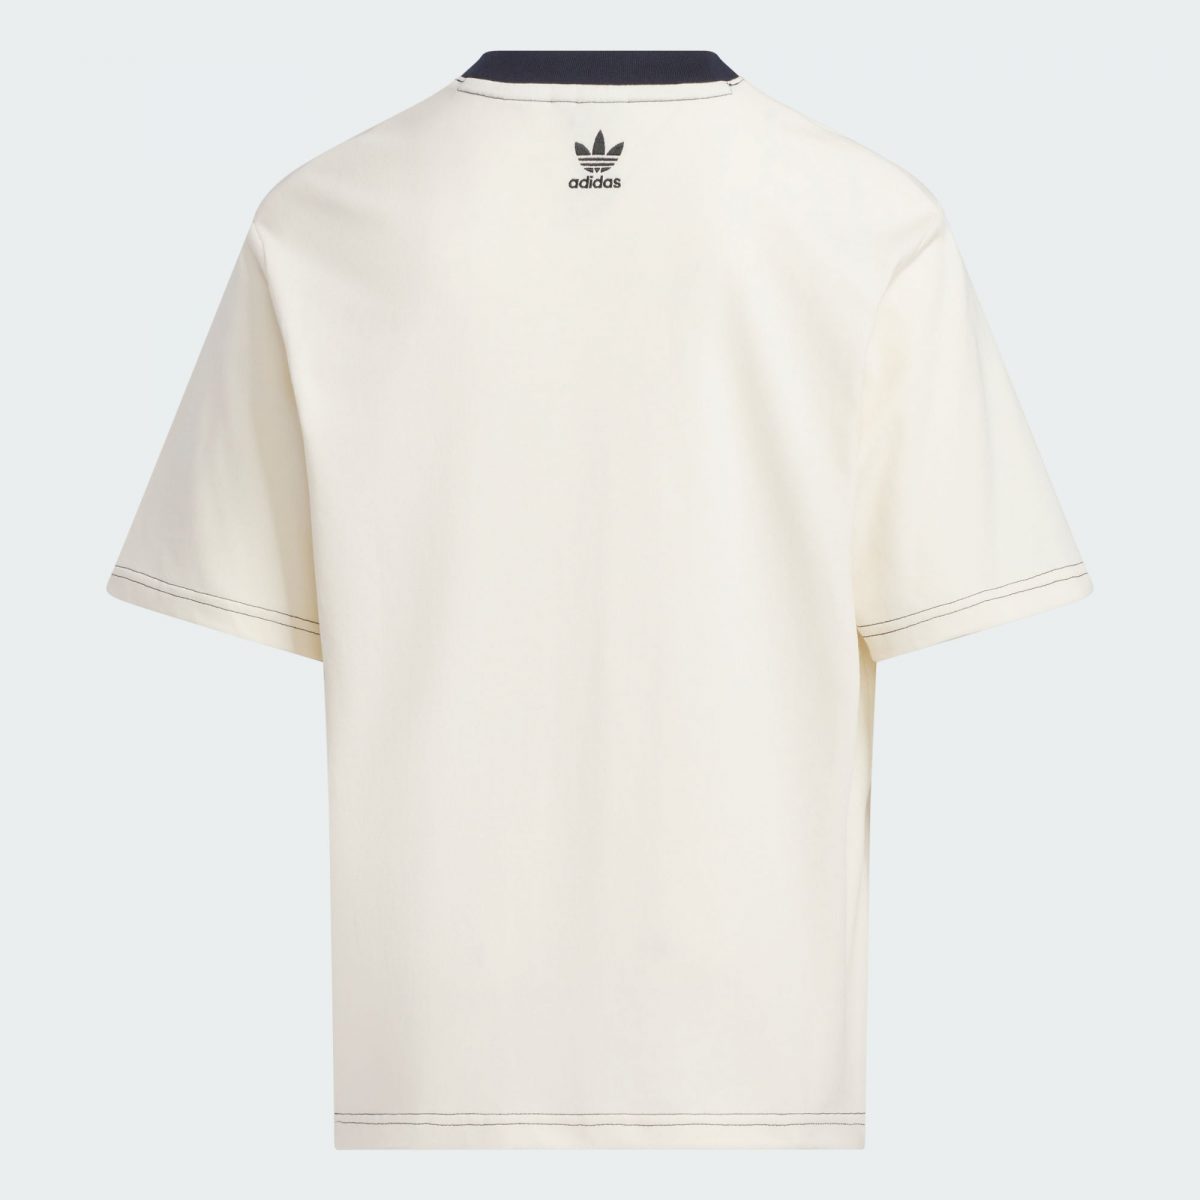 Детская футболка adidas TREFOIL LOGO T-SHIRT белая фотография